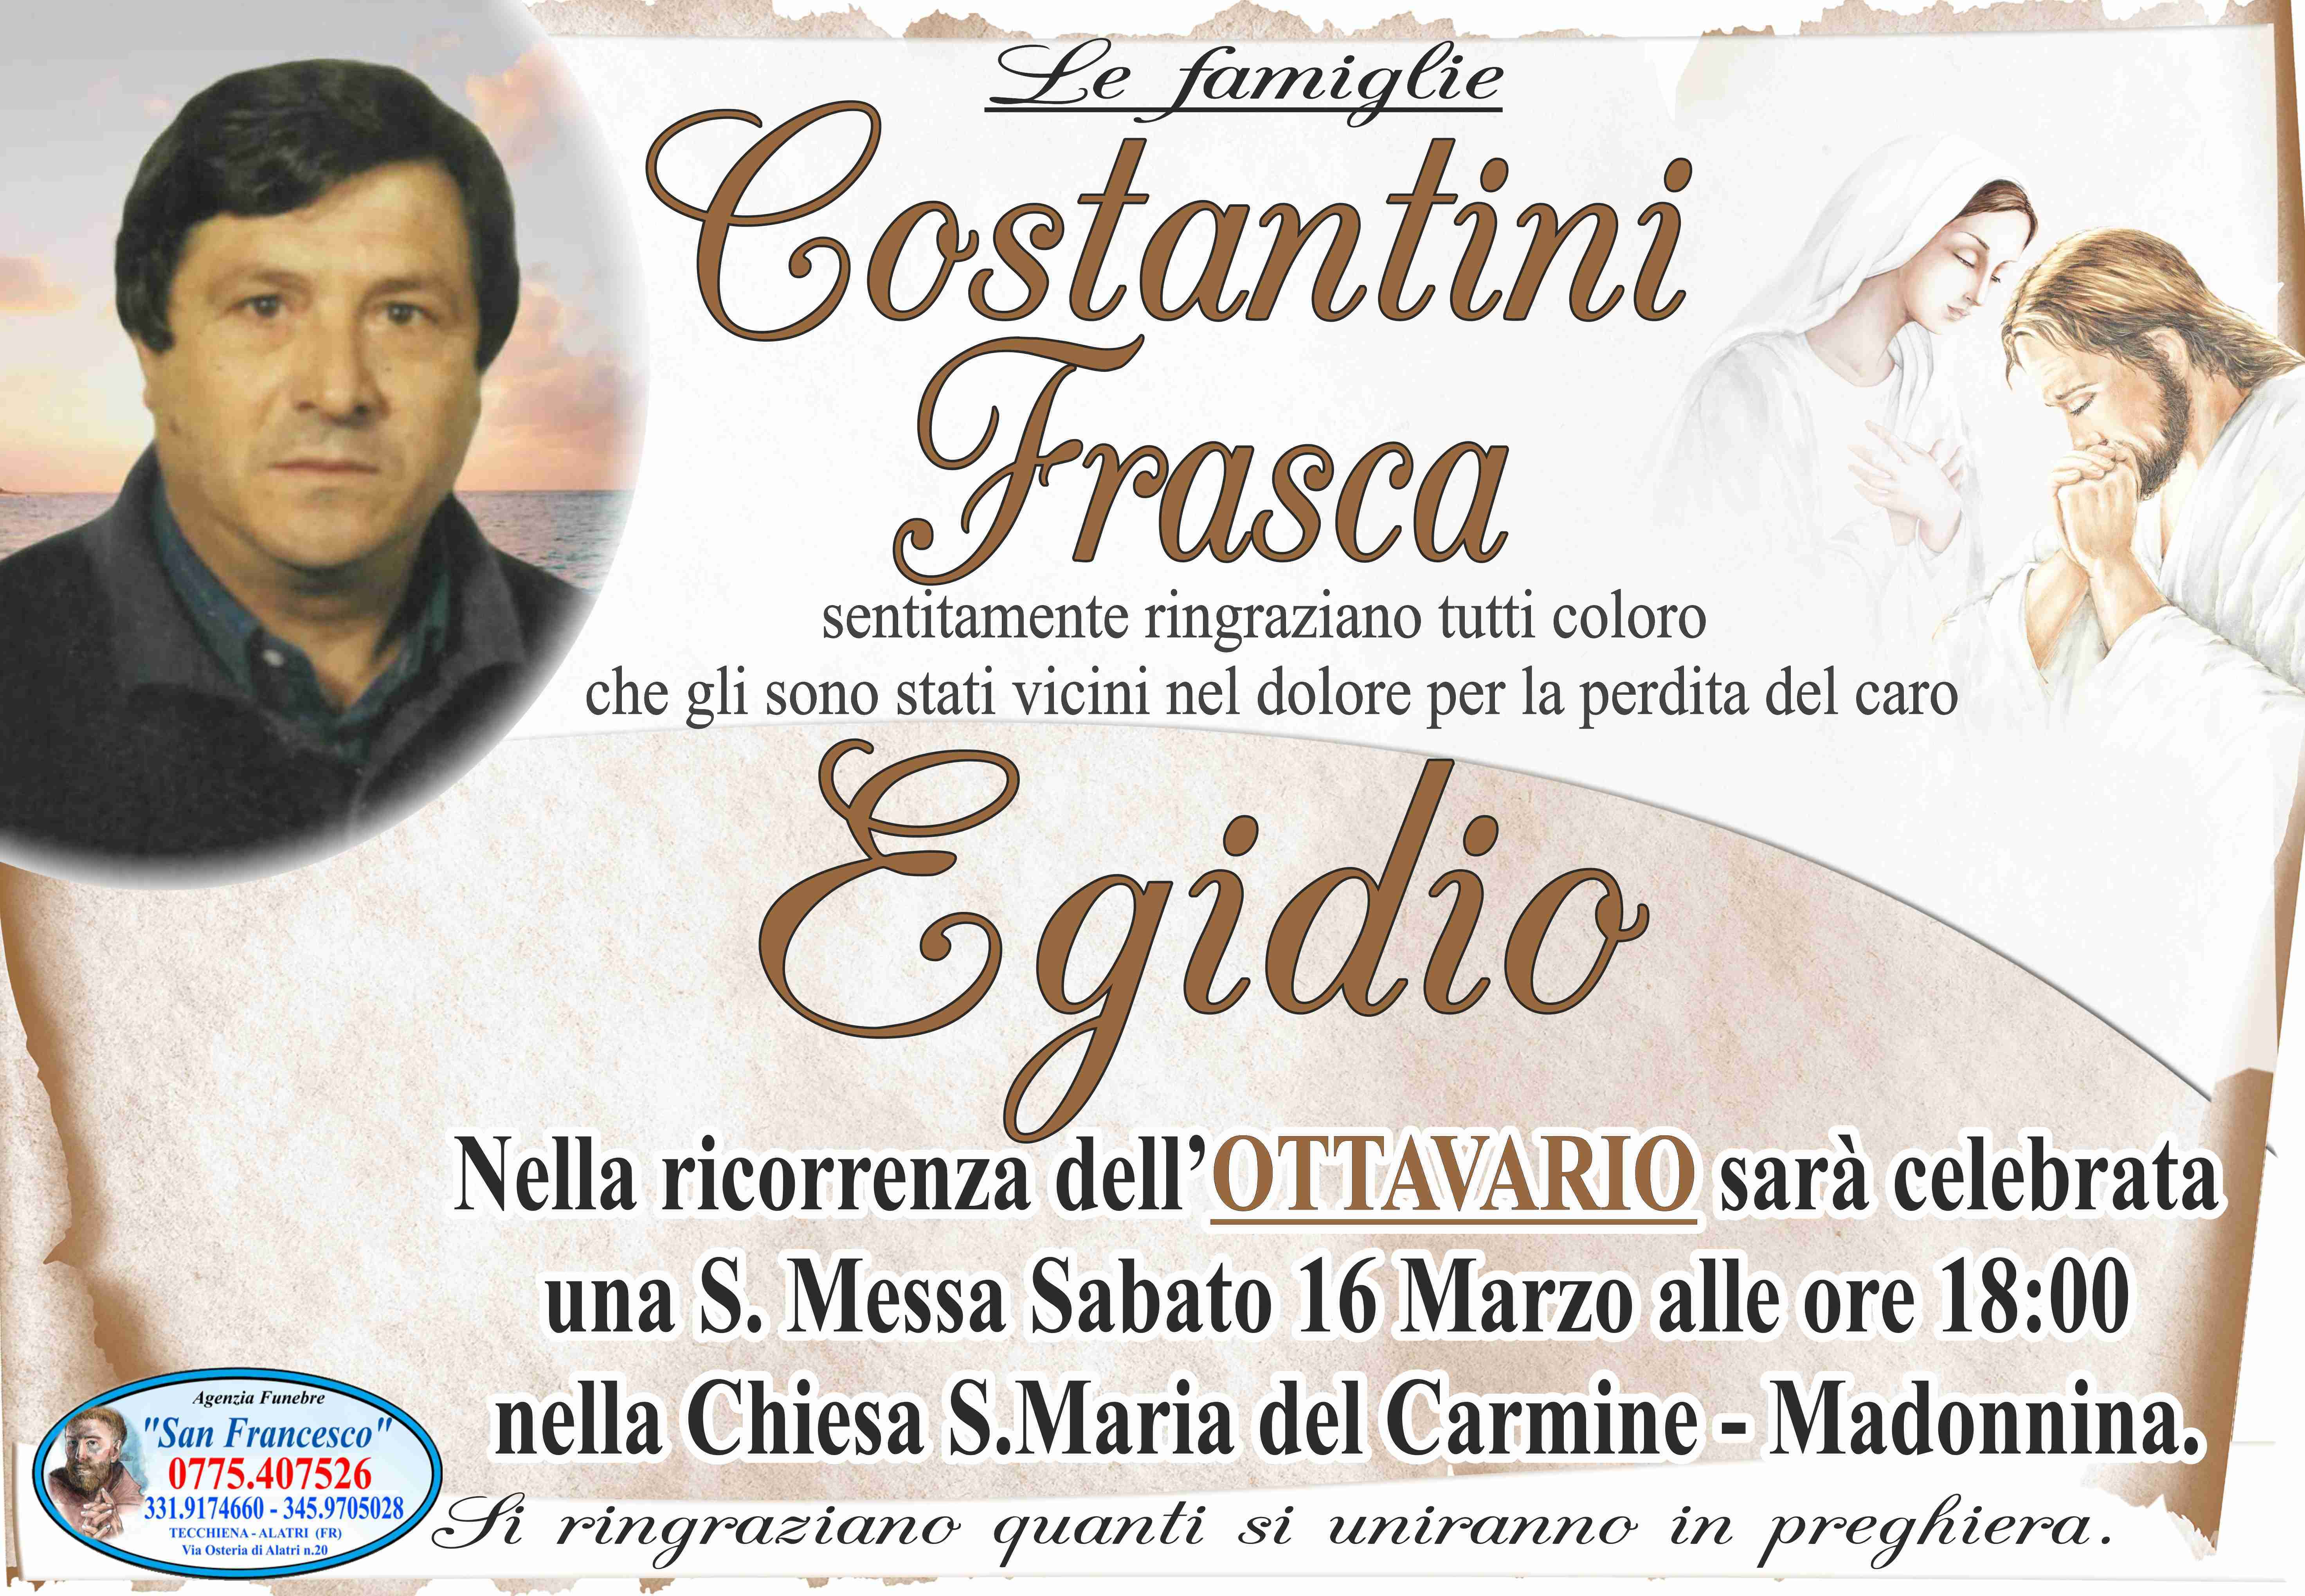 Egidio Costantini